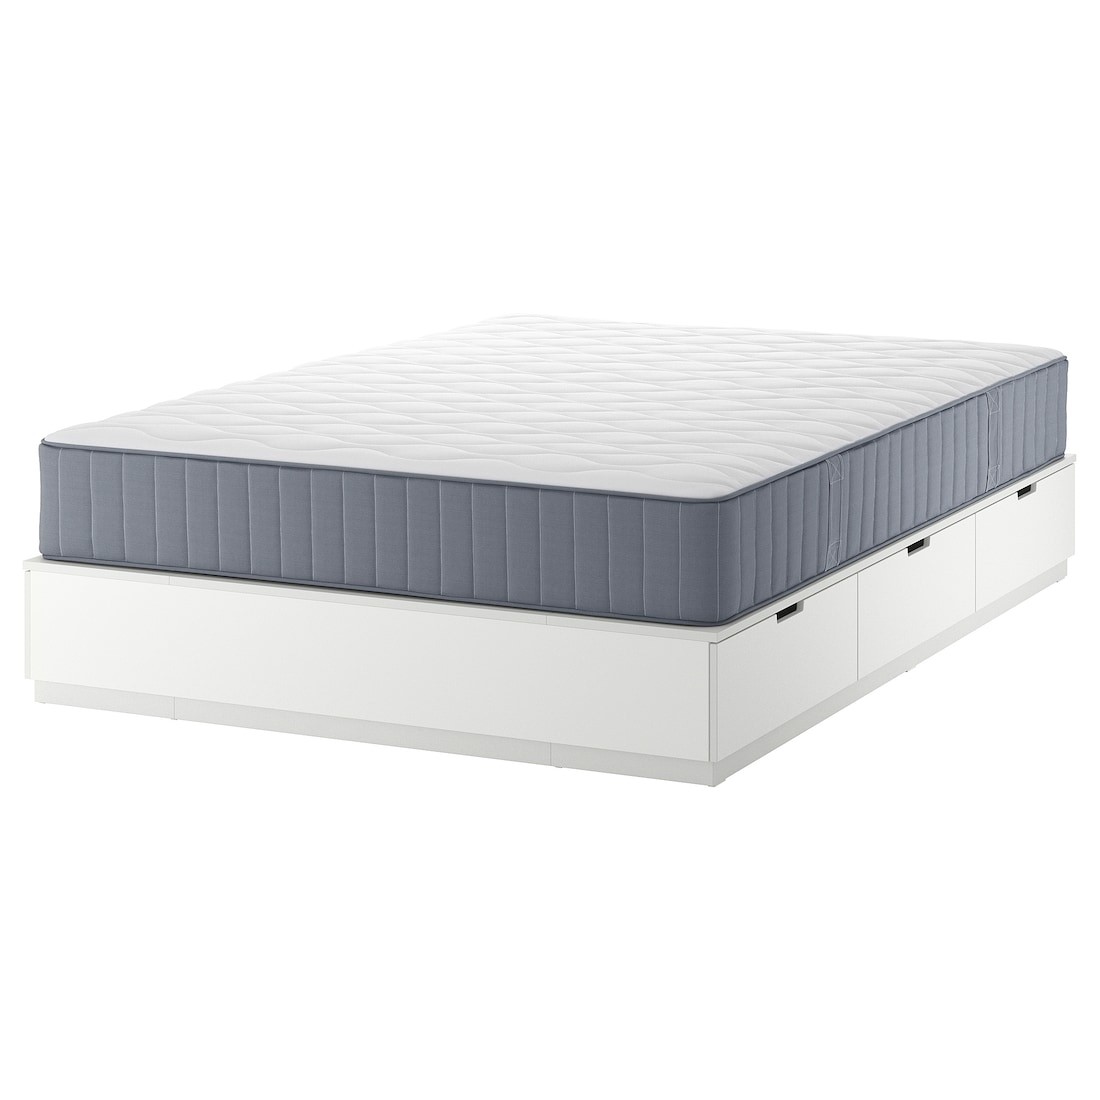 NORDLI Кровать с контейнером и матрасом, белый / Vågstranda жесткий, 160x200 см